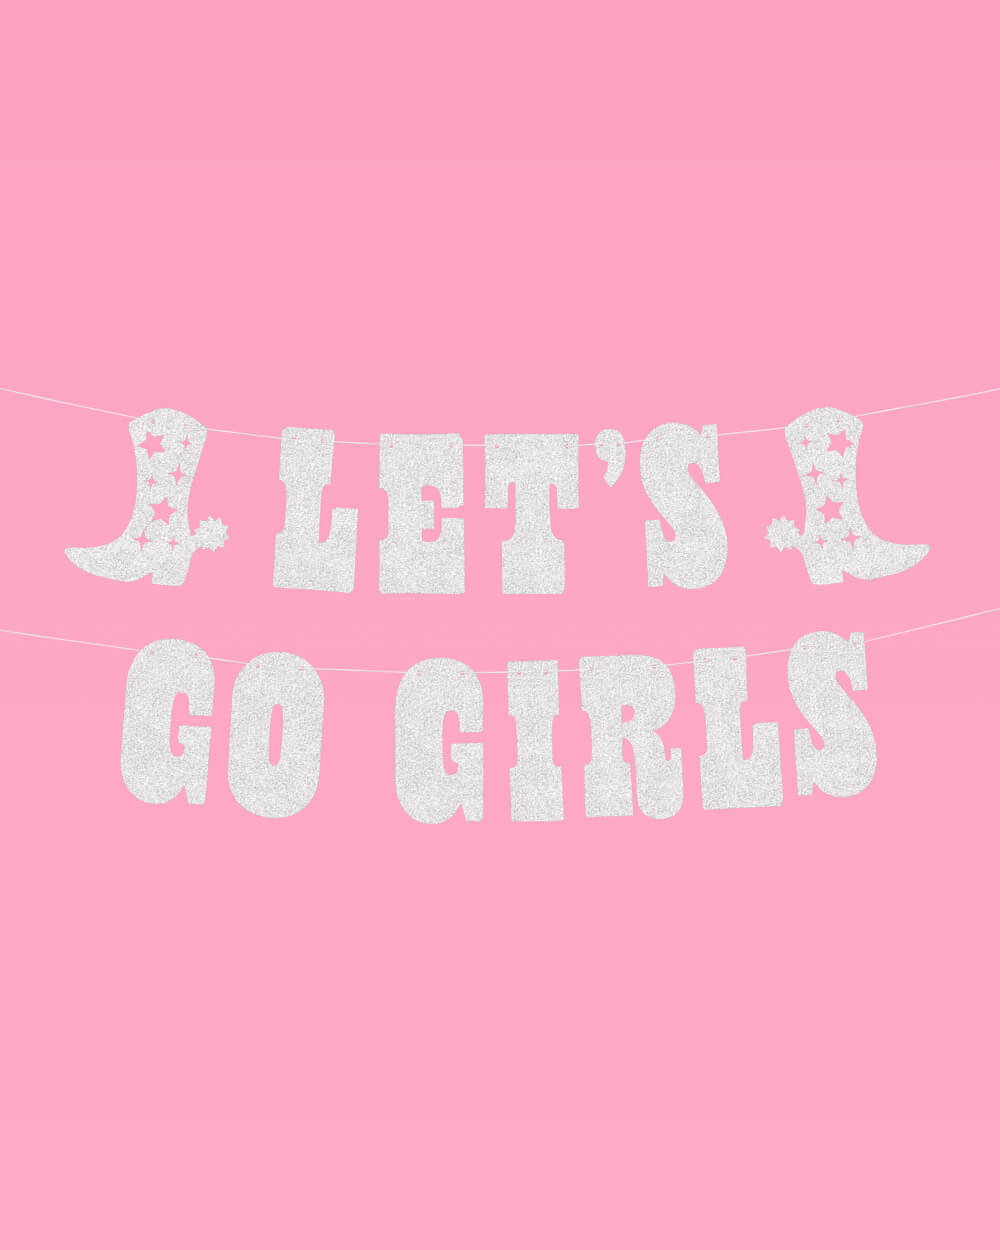 Go Girls